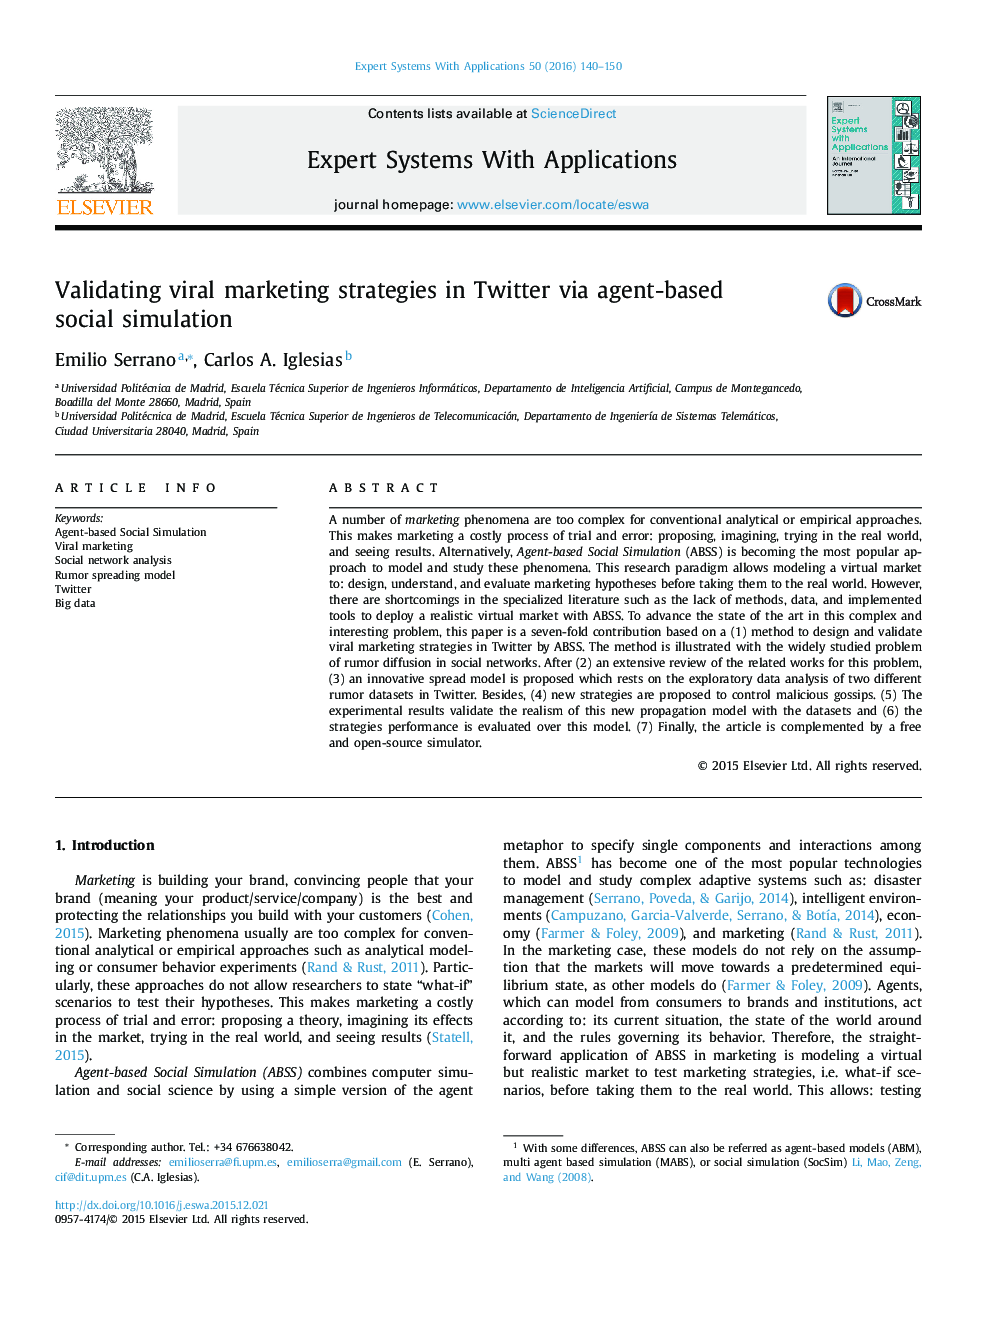 اعتبار استراتژی های بازاریابی ویروسی در توییتر از طریق شبیه سازی اجتماعی مبتنی بر عامل